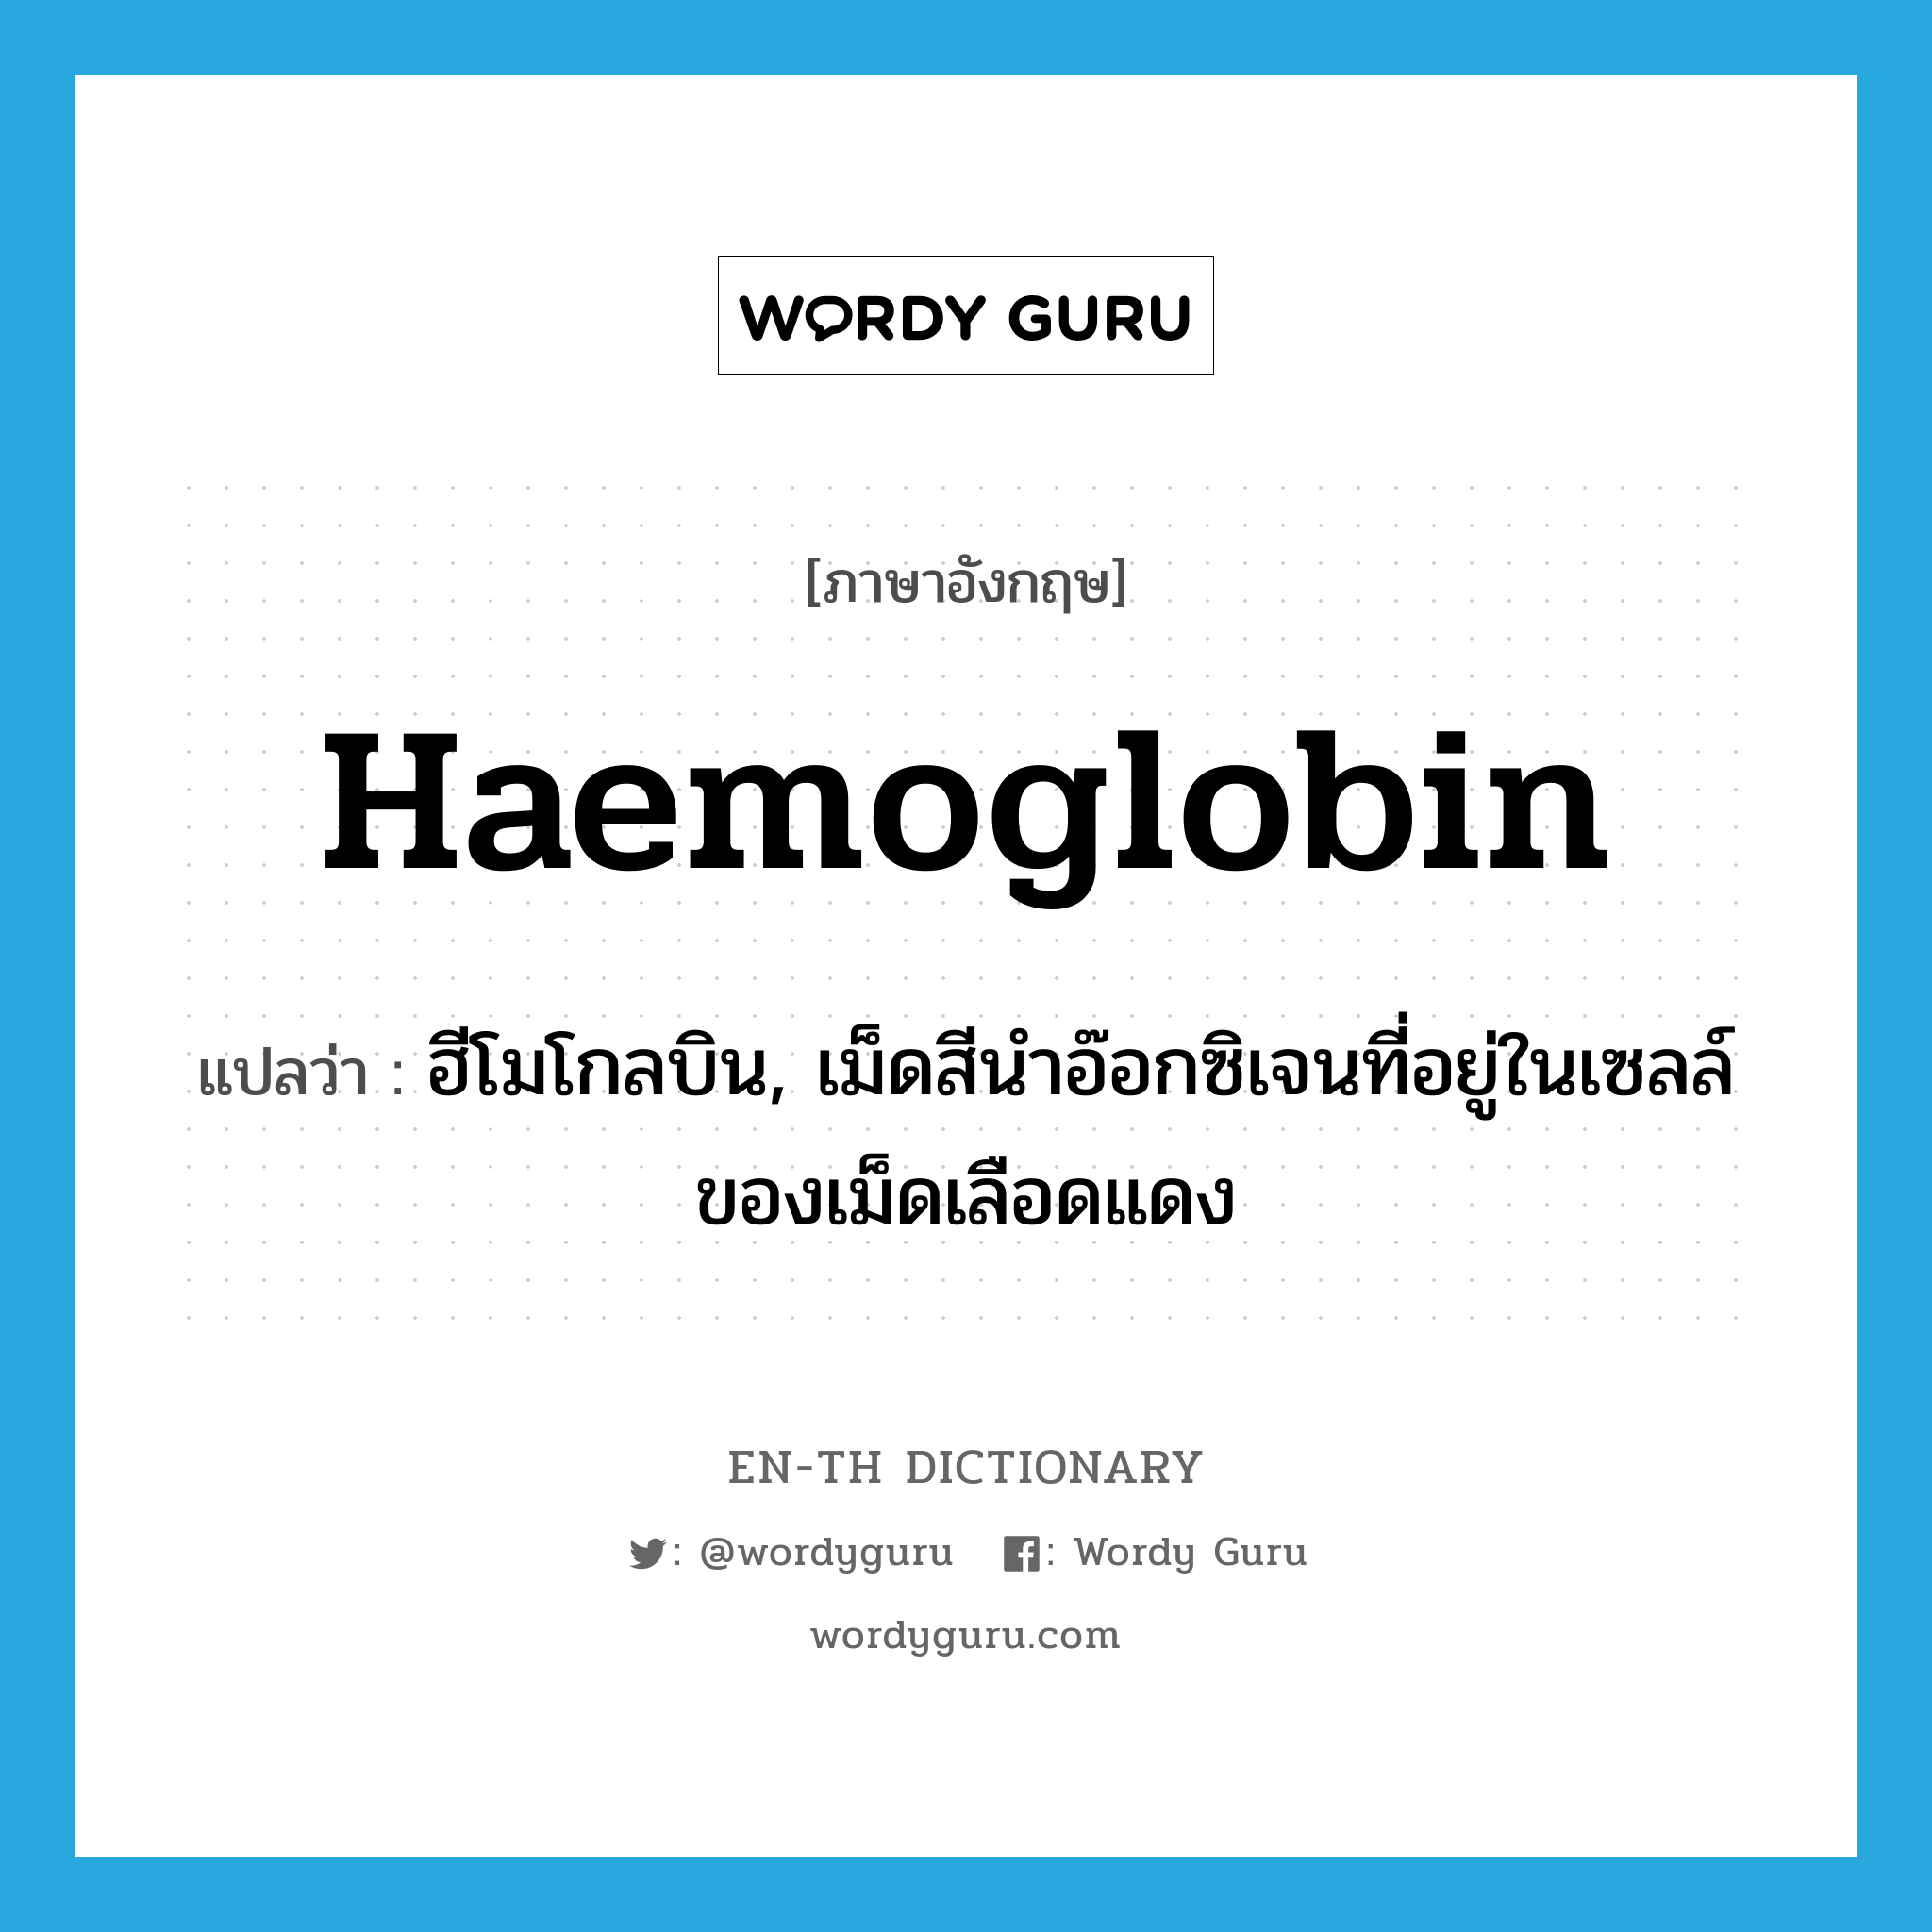 ฮีโมโกลบิน, เม็ดสีนำอ๊อกซิเจนที่อยู่ในเซลล์ของเม็ดเลือดแดง ภาษาอังกฤษ?, คำศัพท์ภาษาอังกฤษ ฮีโมโกลบิน, เม็ดสีนำอ๊อกซิเจนที่อยู่ในเซลล์ของเม็ดเลือดแดง แปลว่า haemoglobin ประเภท N หมวด N